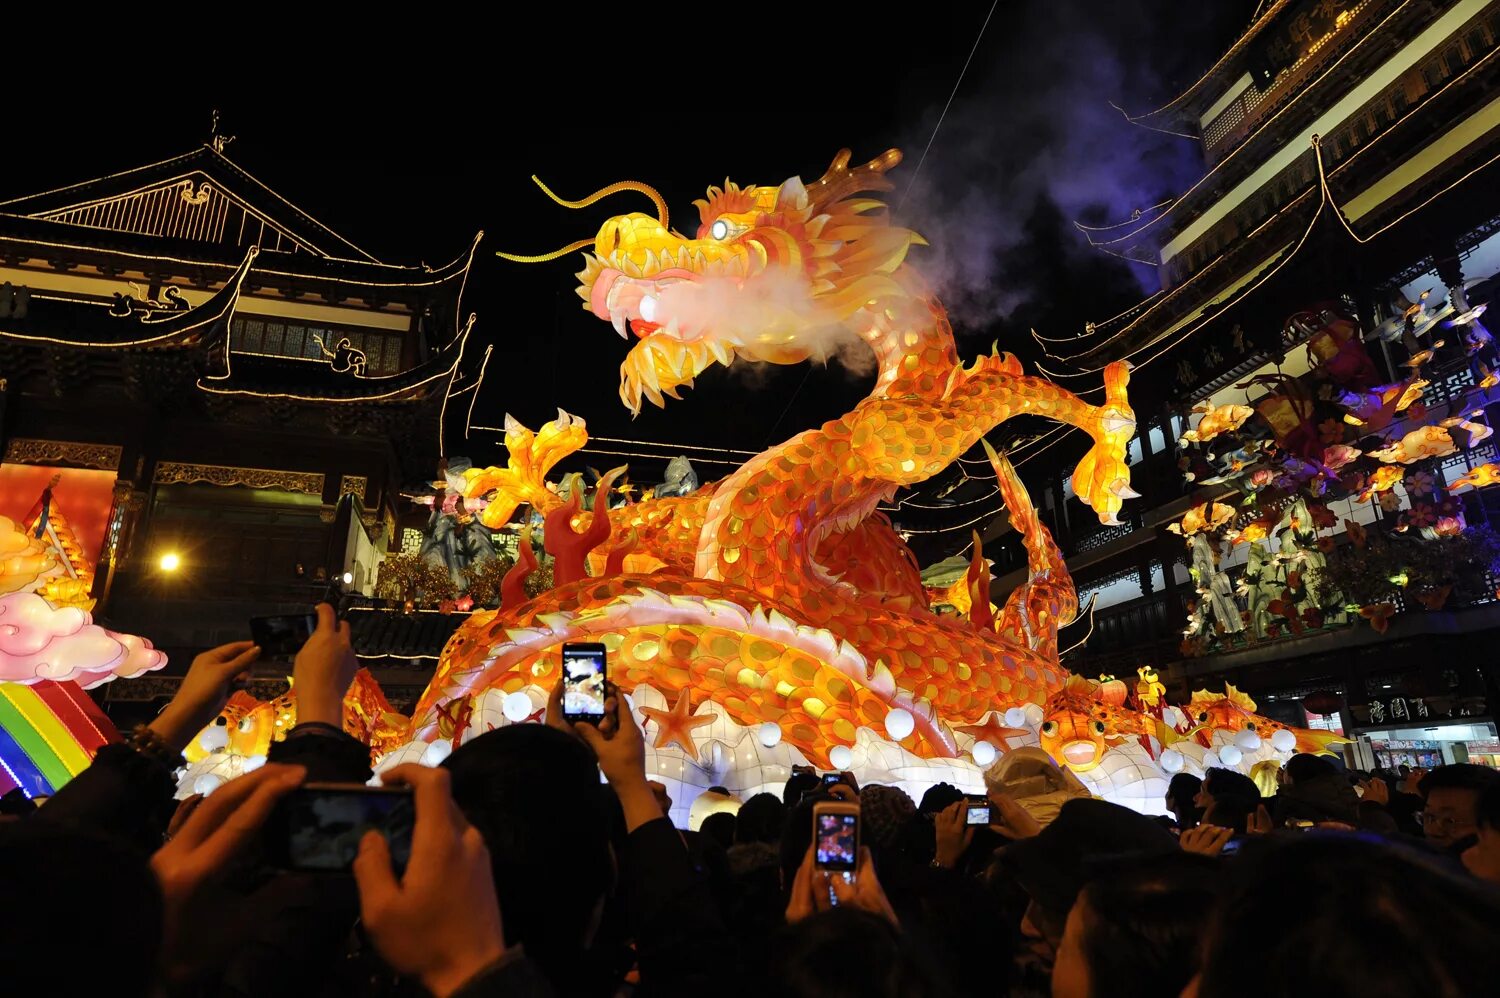 Китайский новый год (Chinese New year). Новый год в Китае. Праздник дракона в Китае. Китайский новый год дракон. New years festival